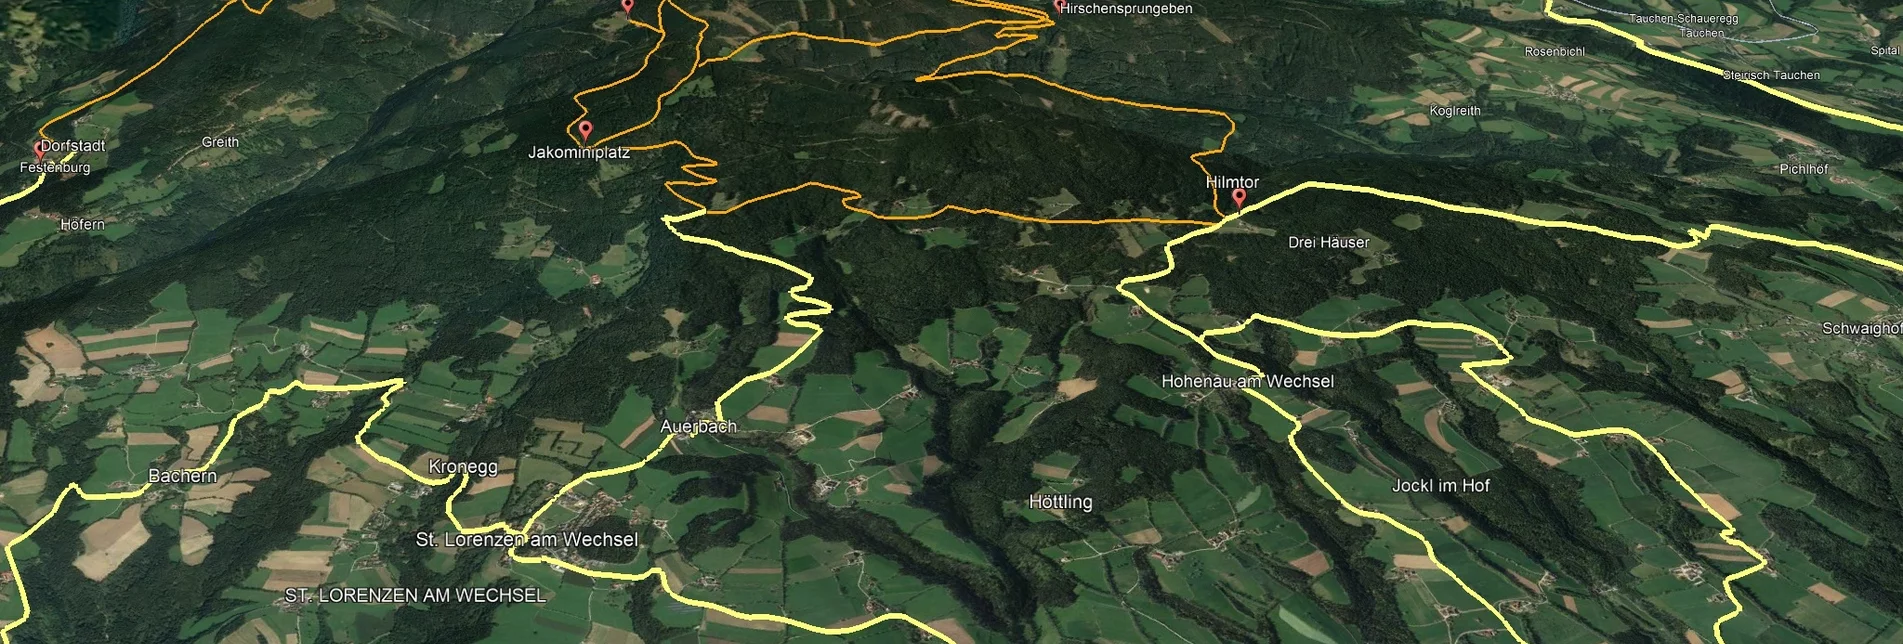 Mountainbike VORSCHAU Steirische Wexl Trails - Windhang Route - Touren-Impression #1 | © Verein Tourismusentwicklung Steirischer Wechsel